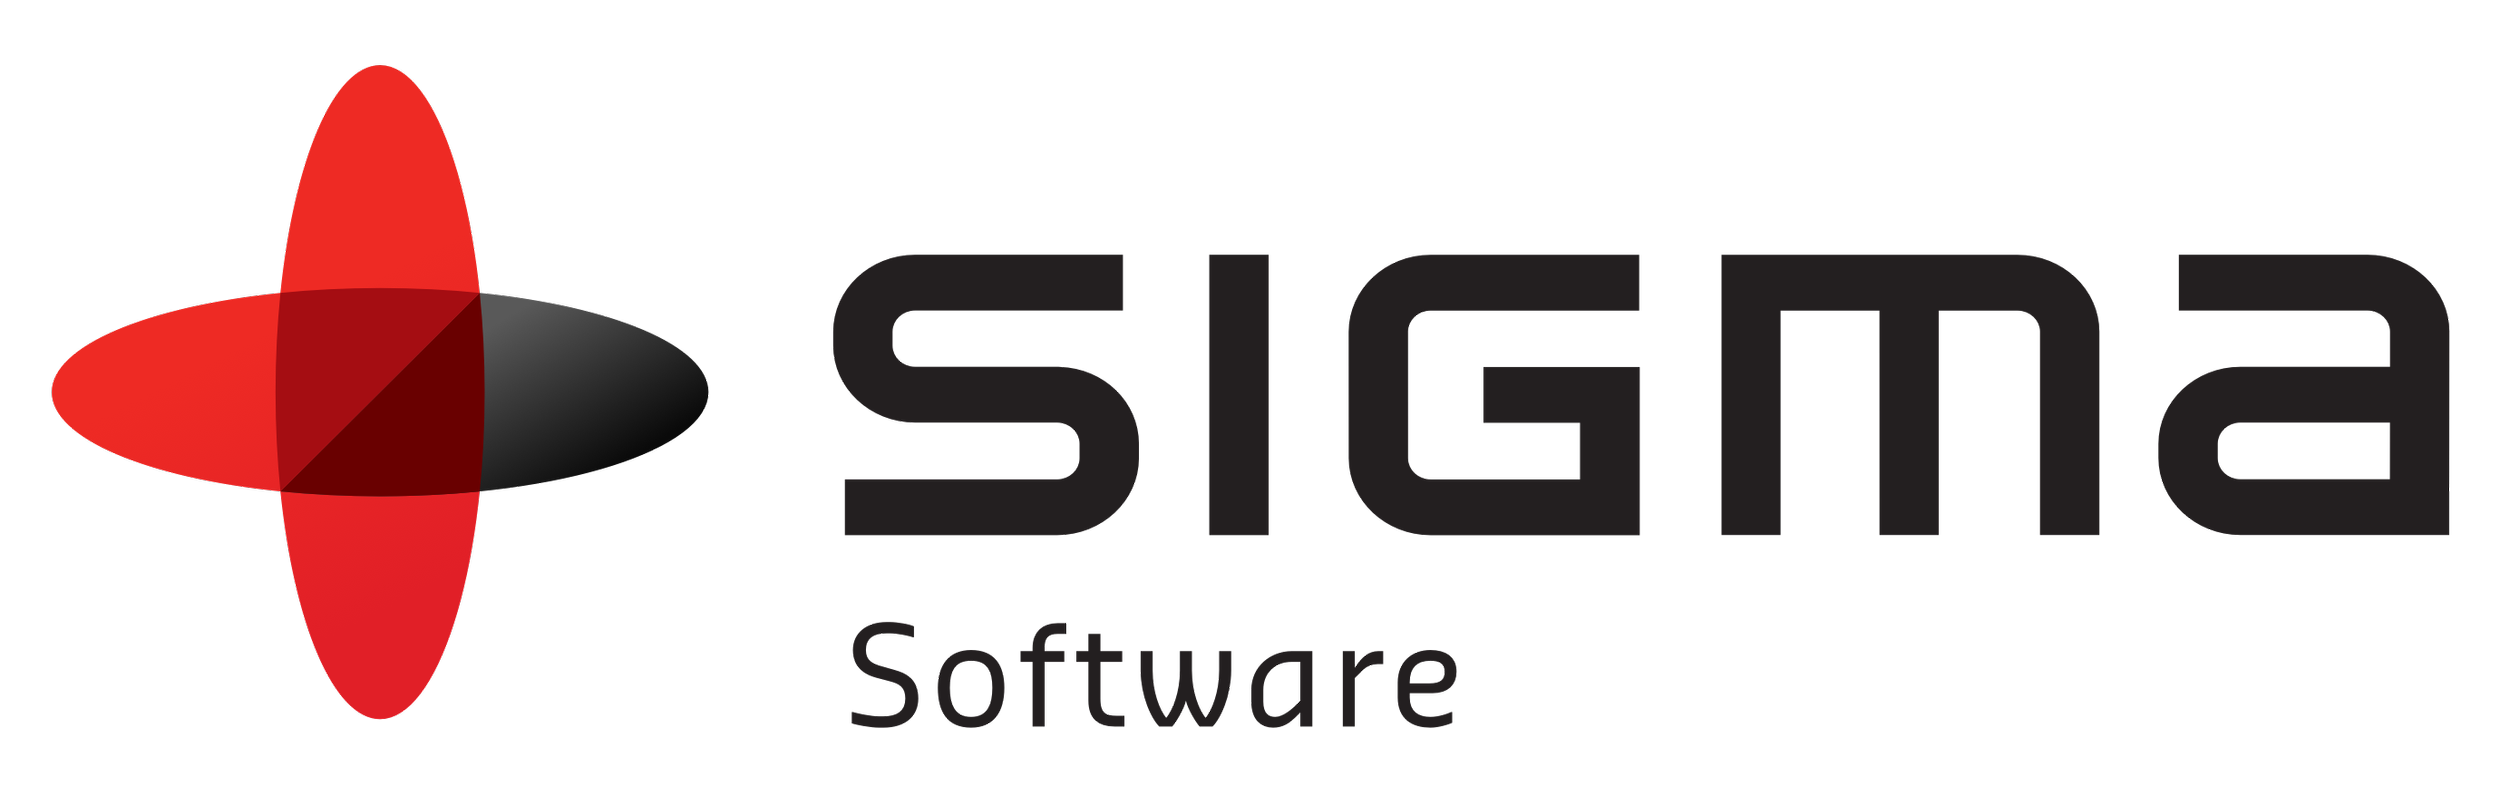 SigmaSoftware.png